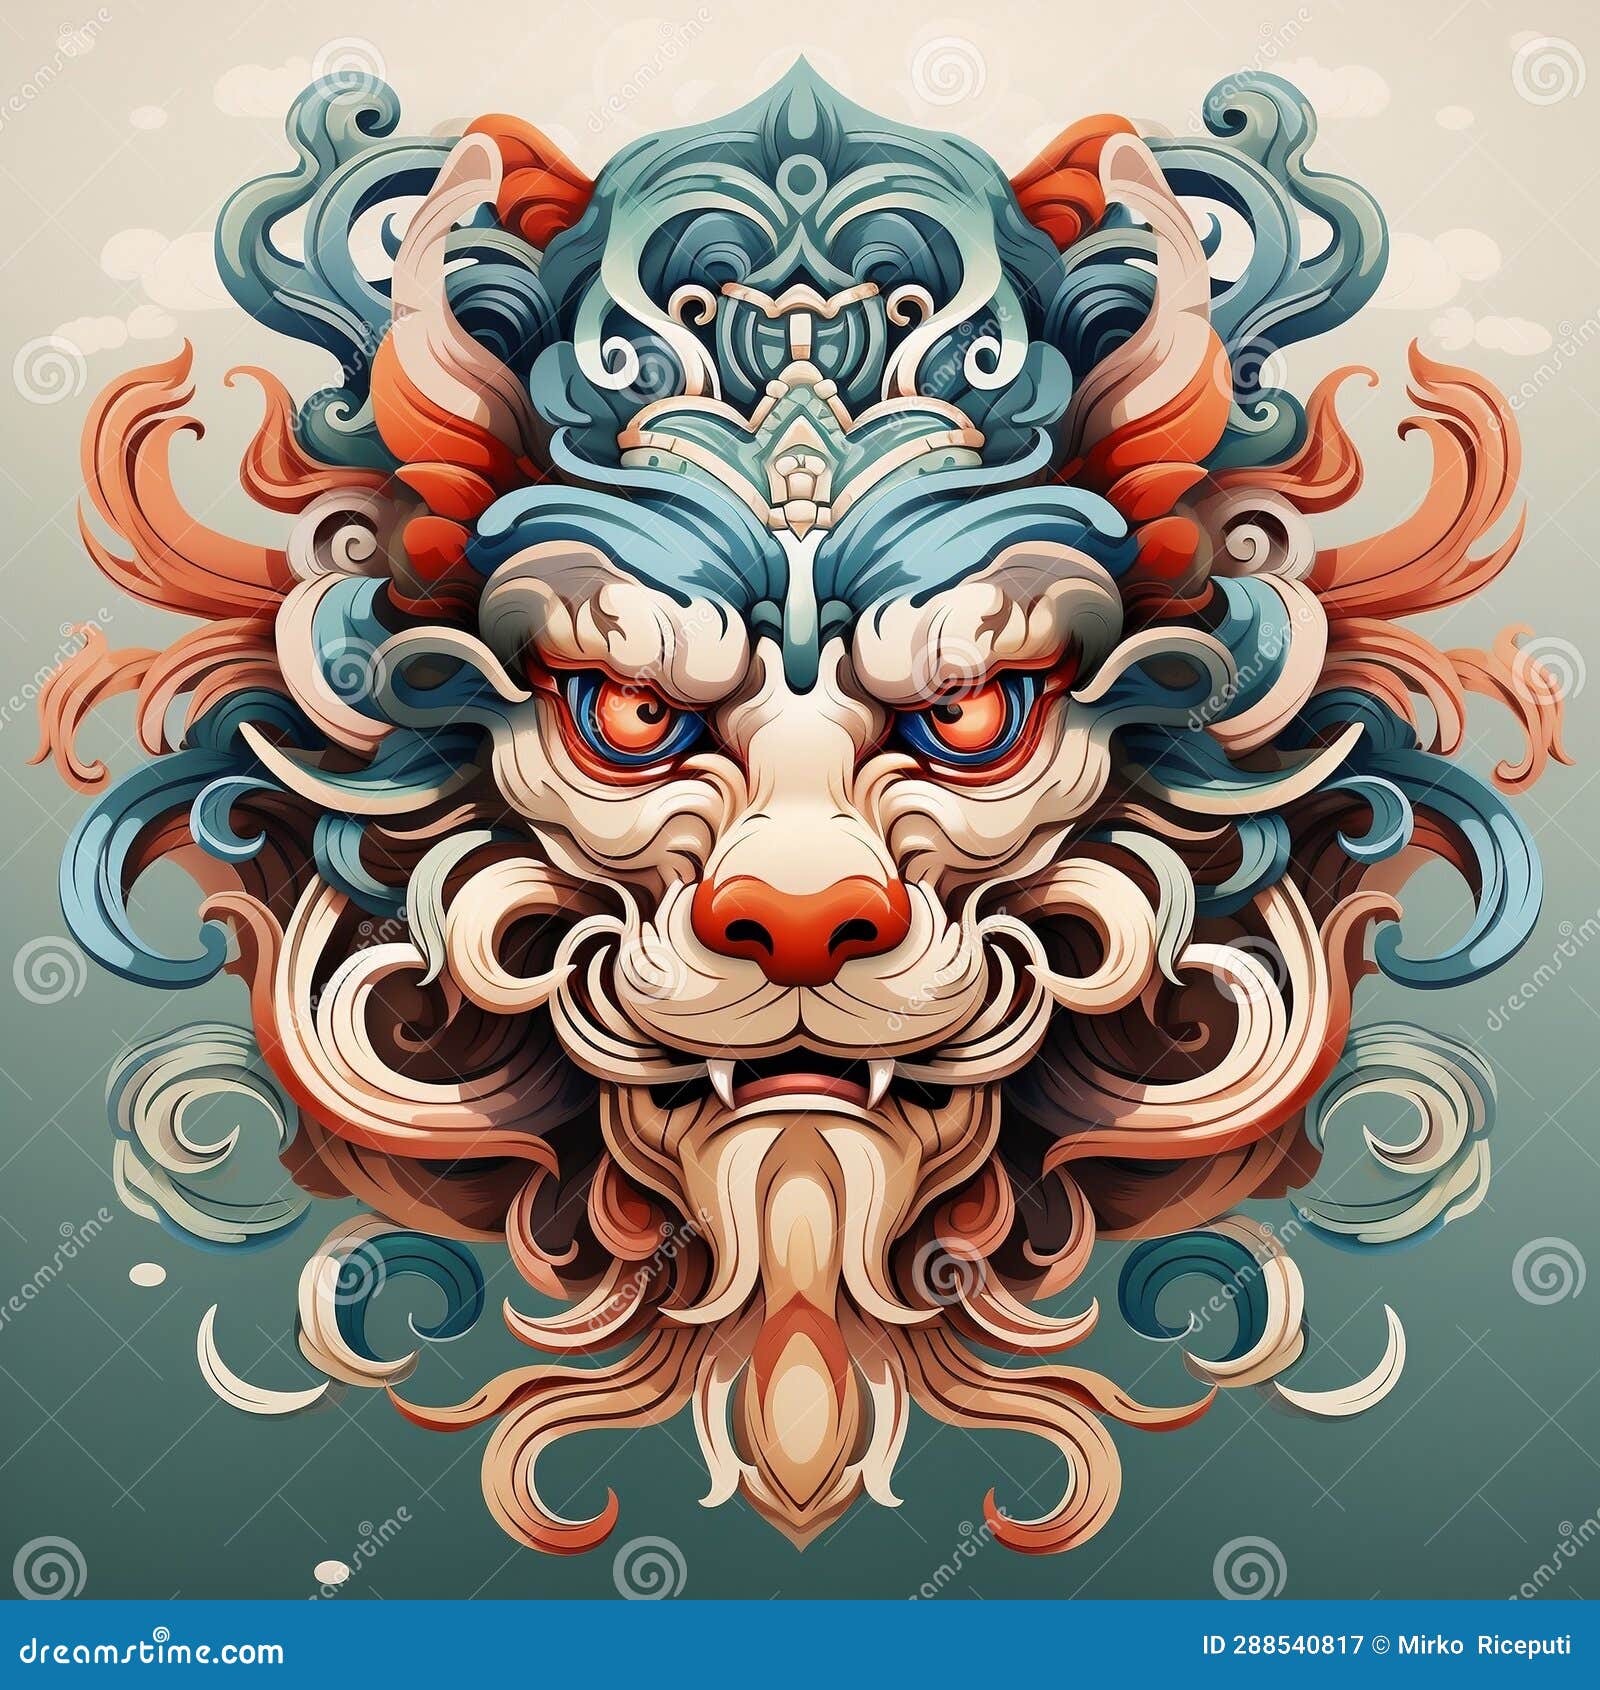 Chinese Mythological Animal Stock Illustration - Illustration of ...